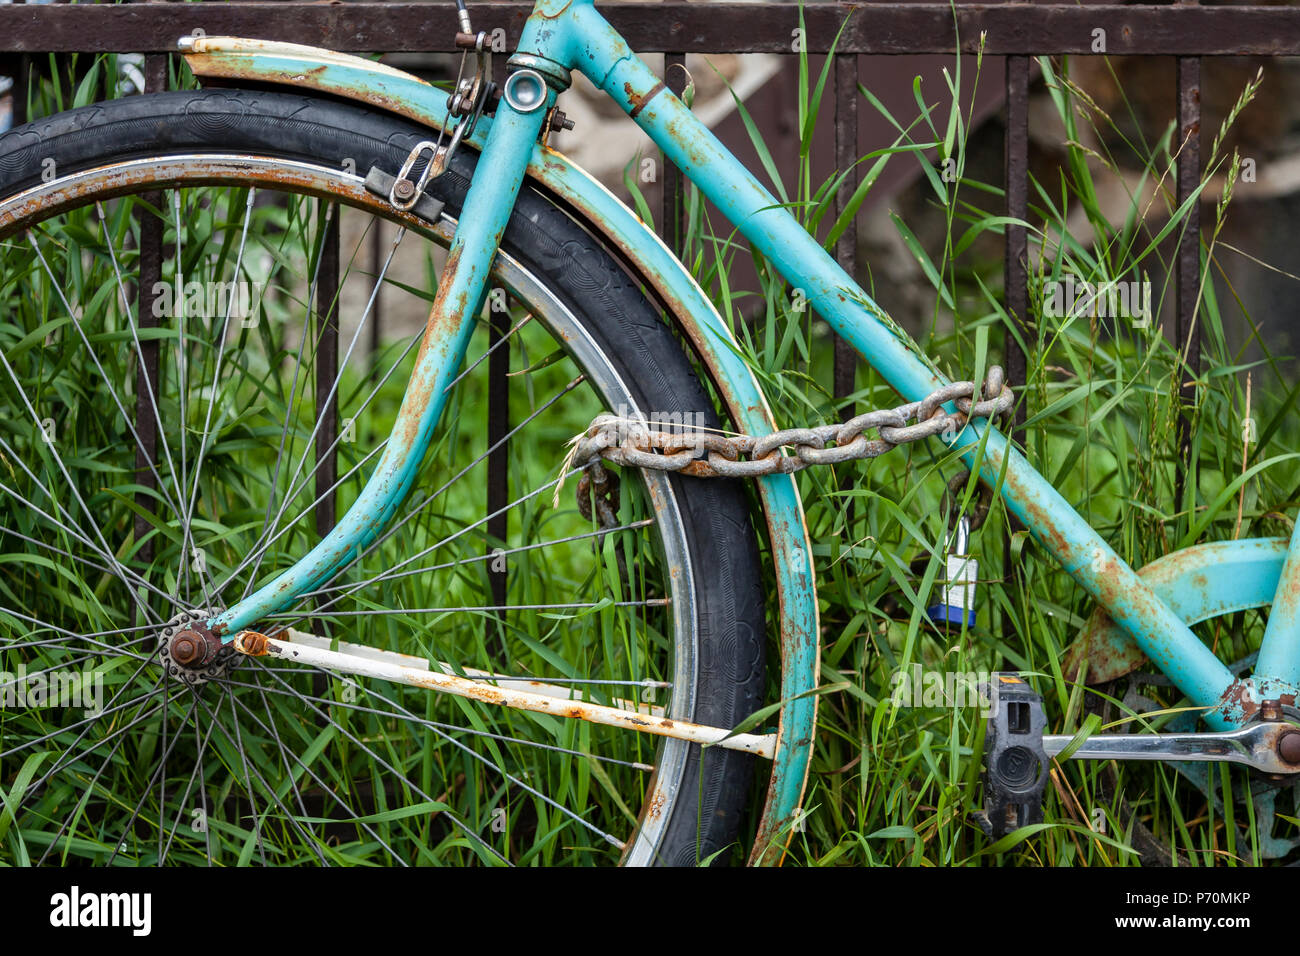 Libre d'une roue avant de vélo avec une chaîne et s'appuyant sur une clôture rouillée. Banque D'Images